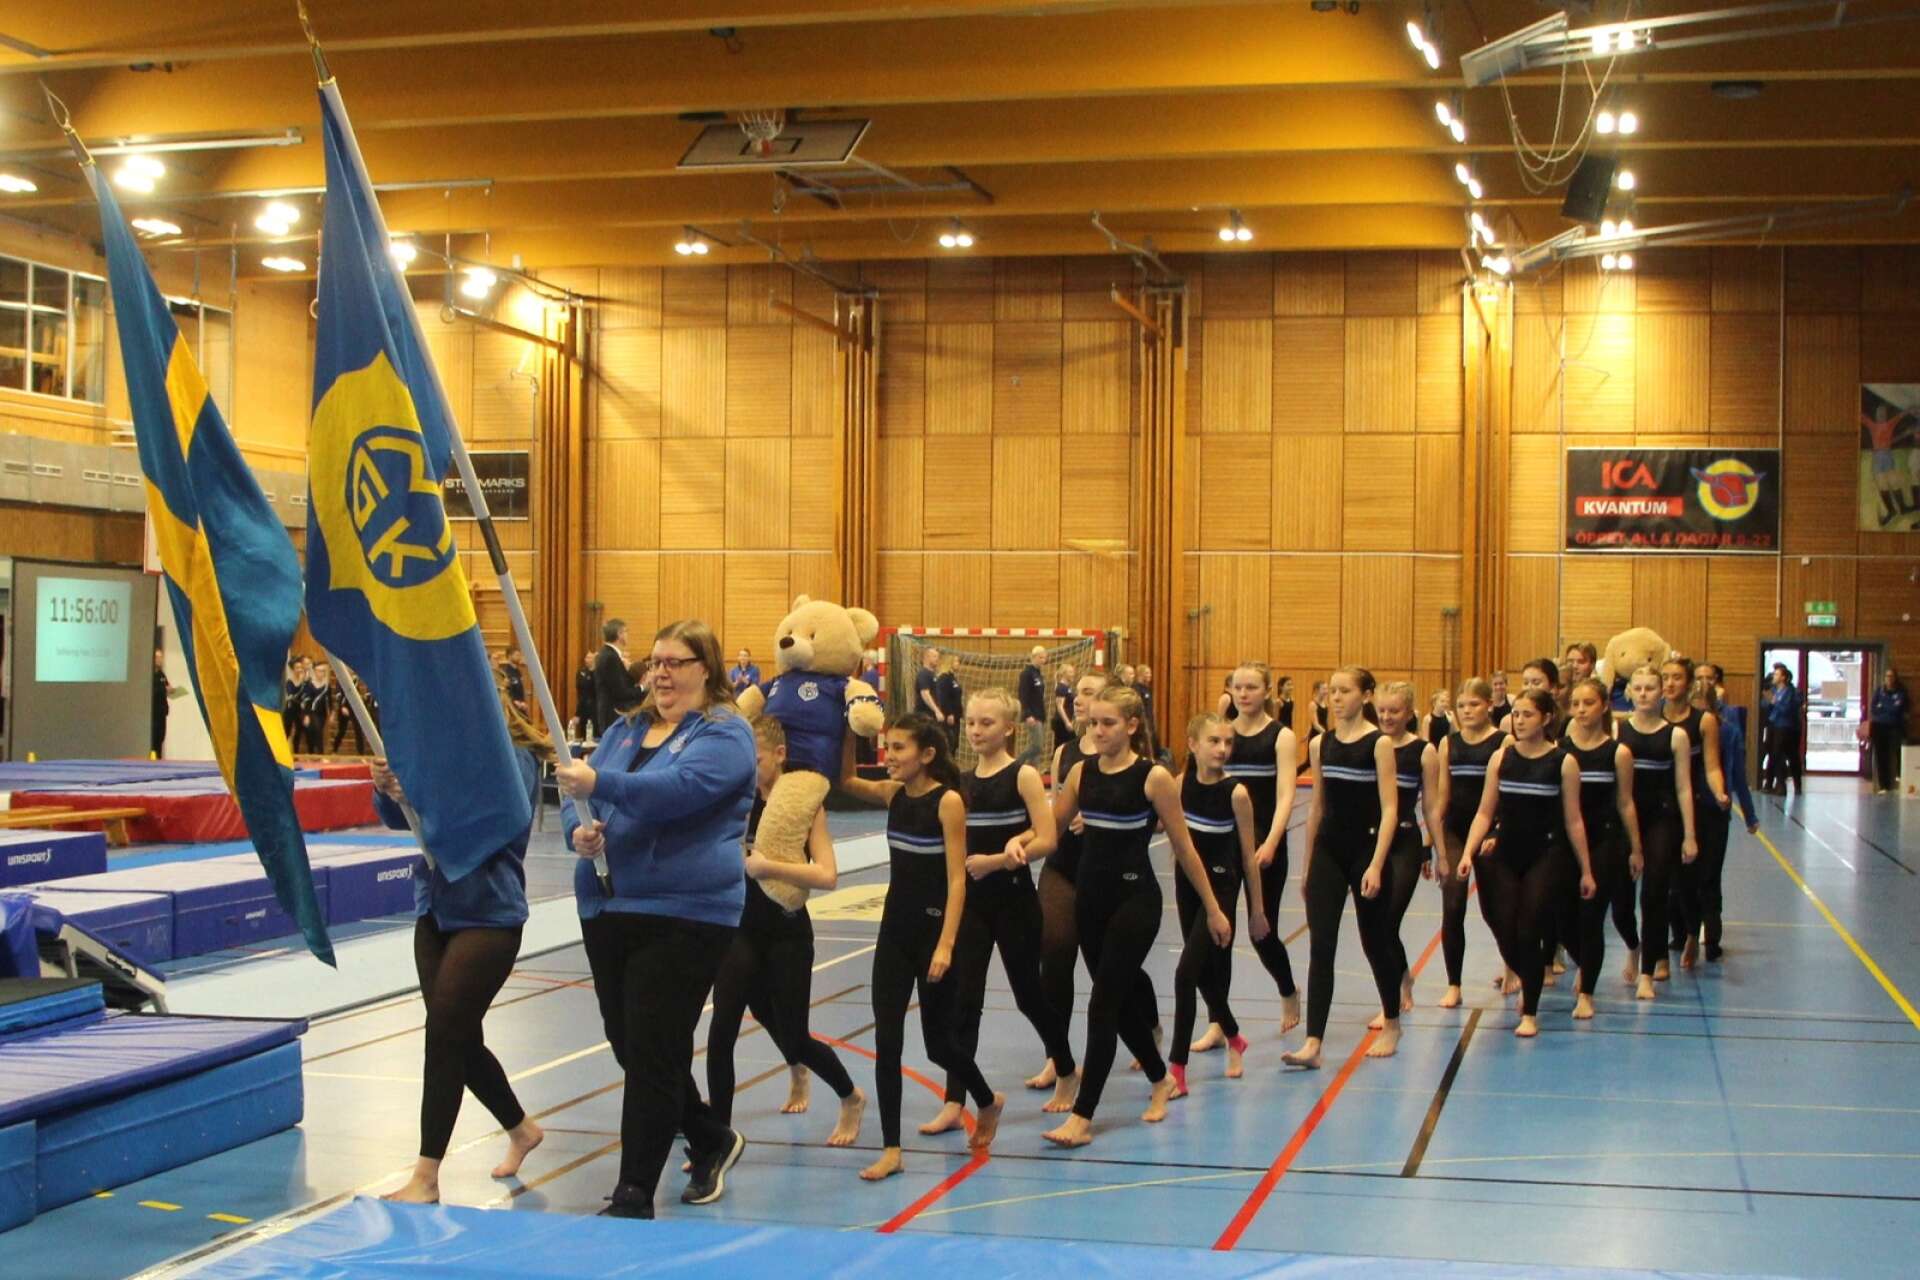 Mariestads gymnastikklubb stod som arrangörer för Skaraborgscupen som var i lördags i Novab arena.